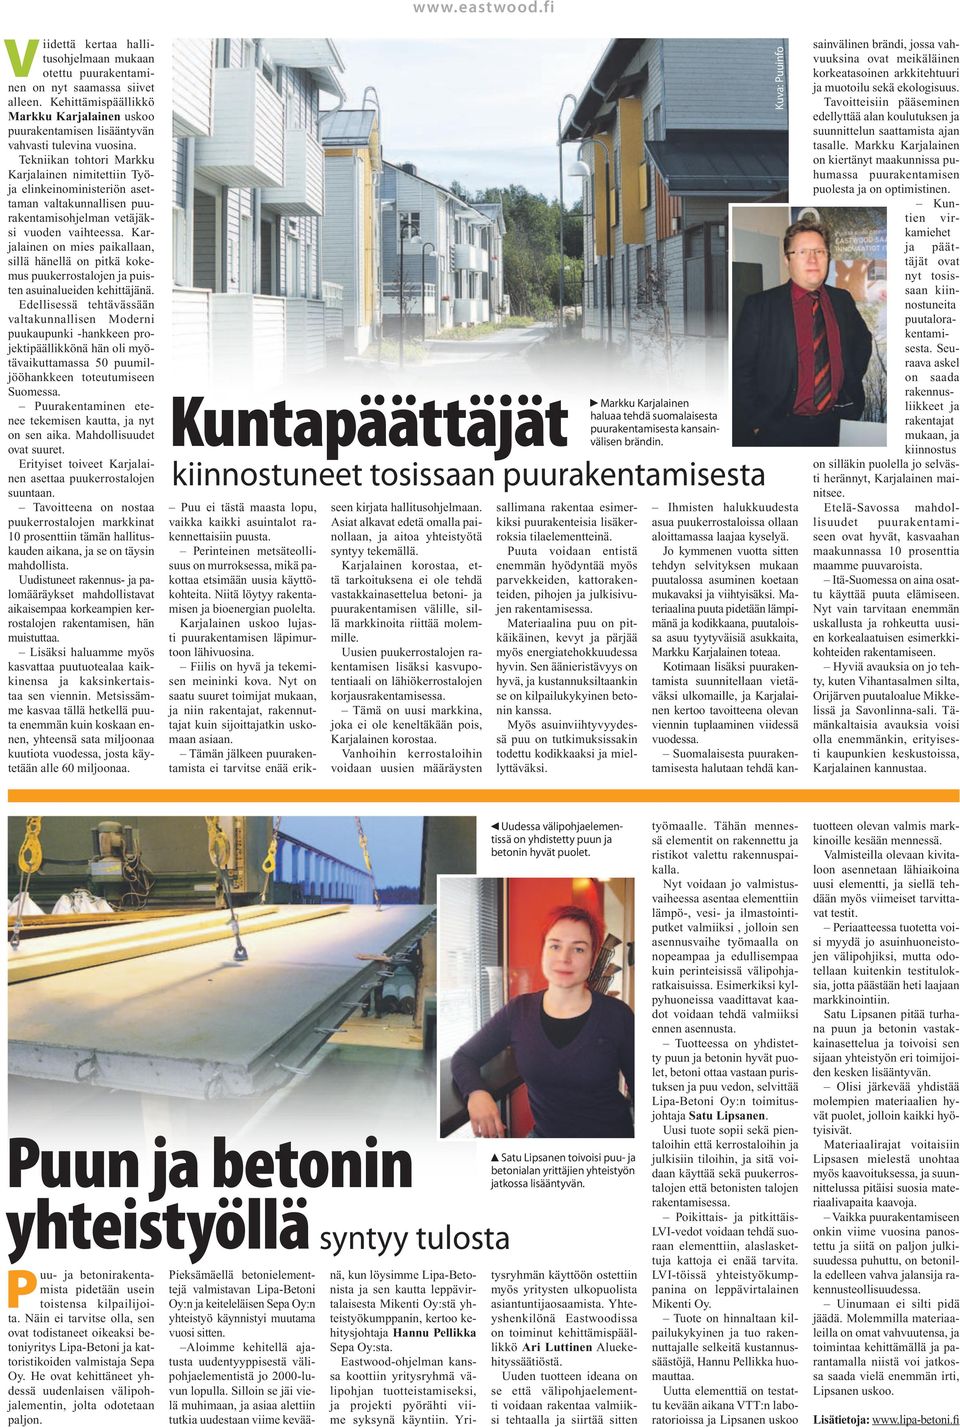 Tekniikan tohtori Markku Karjalainen nimitettiin Työja elinkeinoministeriön asettaman valtakunnallisen puurakentamisohjelman vetäjäksi vuoden vaihteessa.